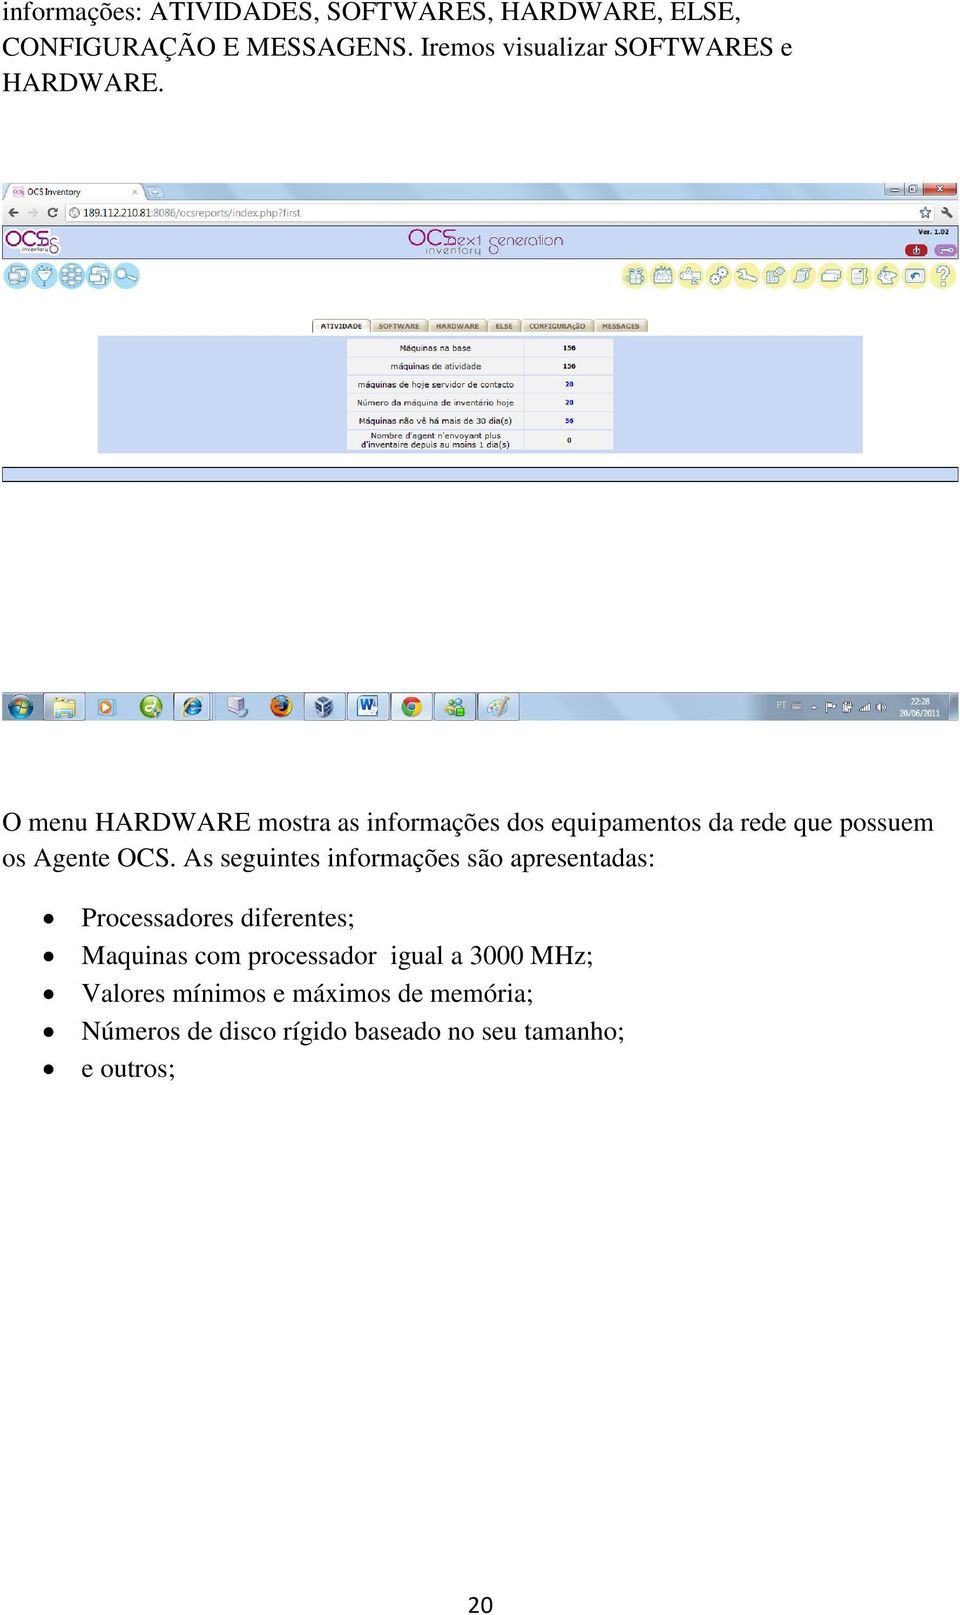 O menu HARDWARE mostra as informações dos equipamentos da rede que possuem os Agente OCS.